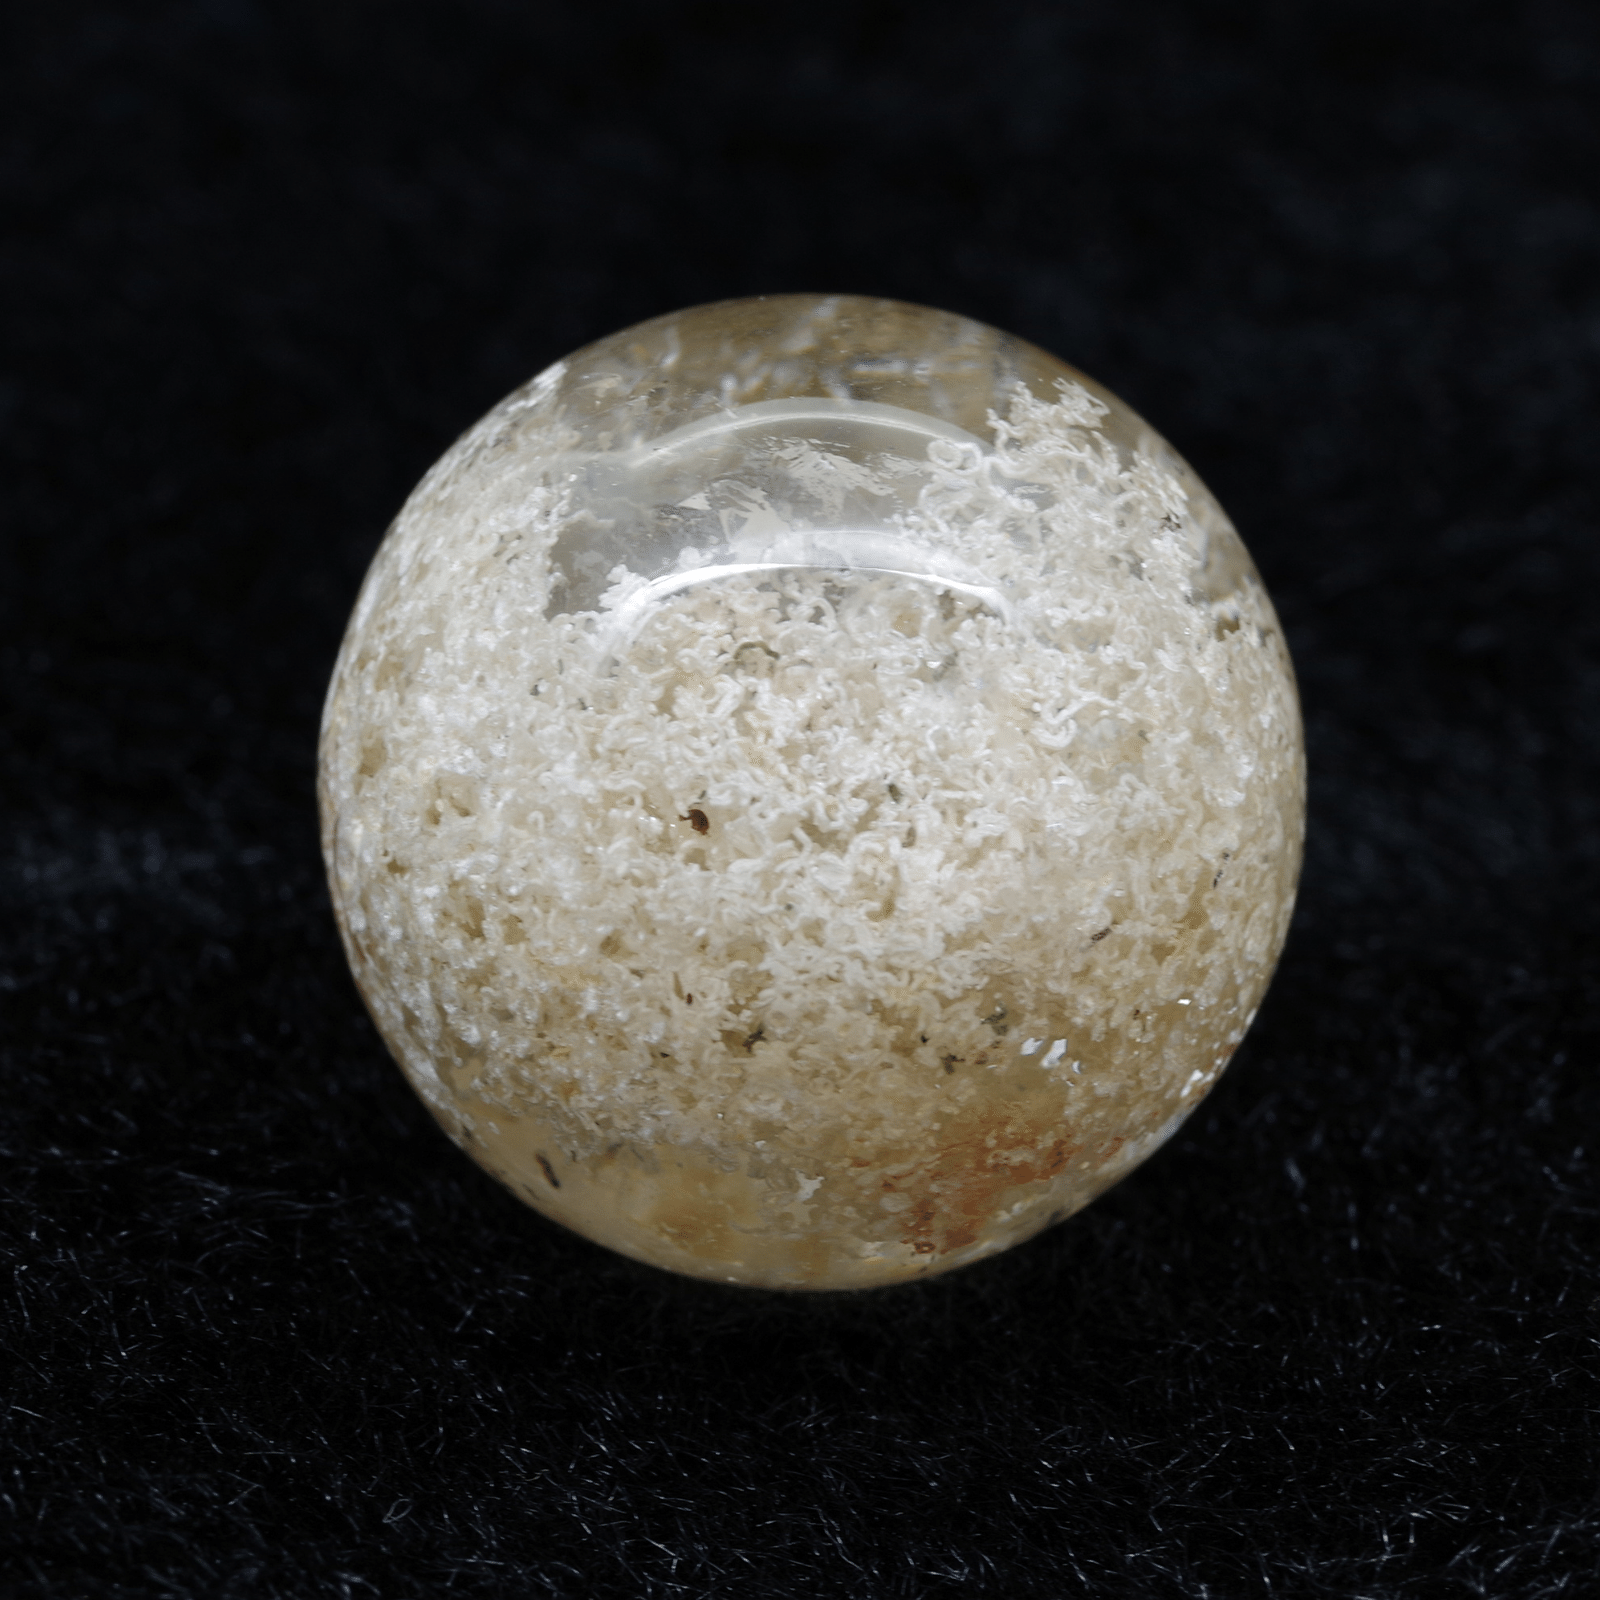 ホワイトガーデンクォーツ スフィア No.1 - ハイグレード天然石 